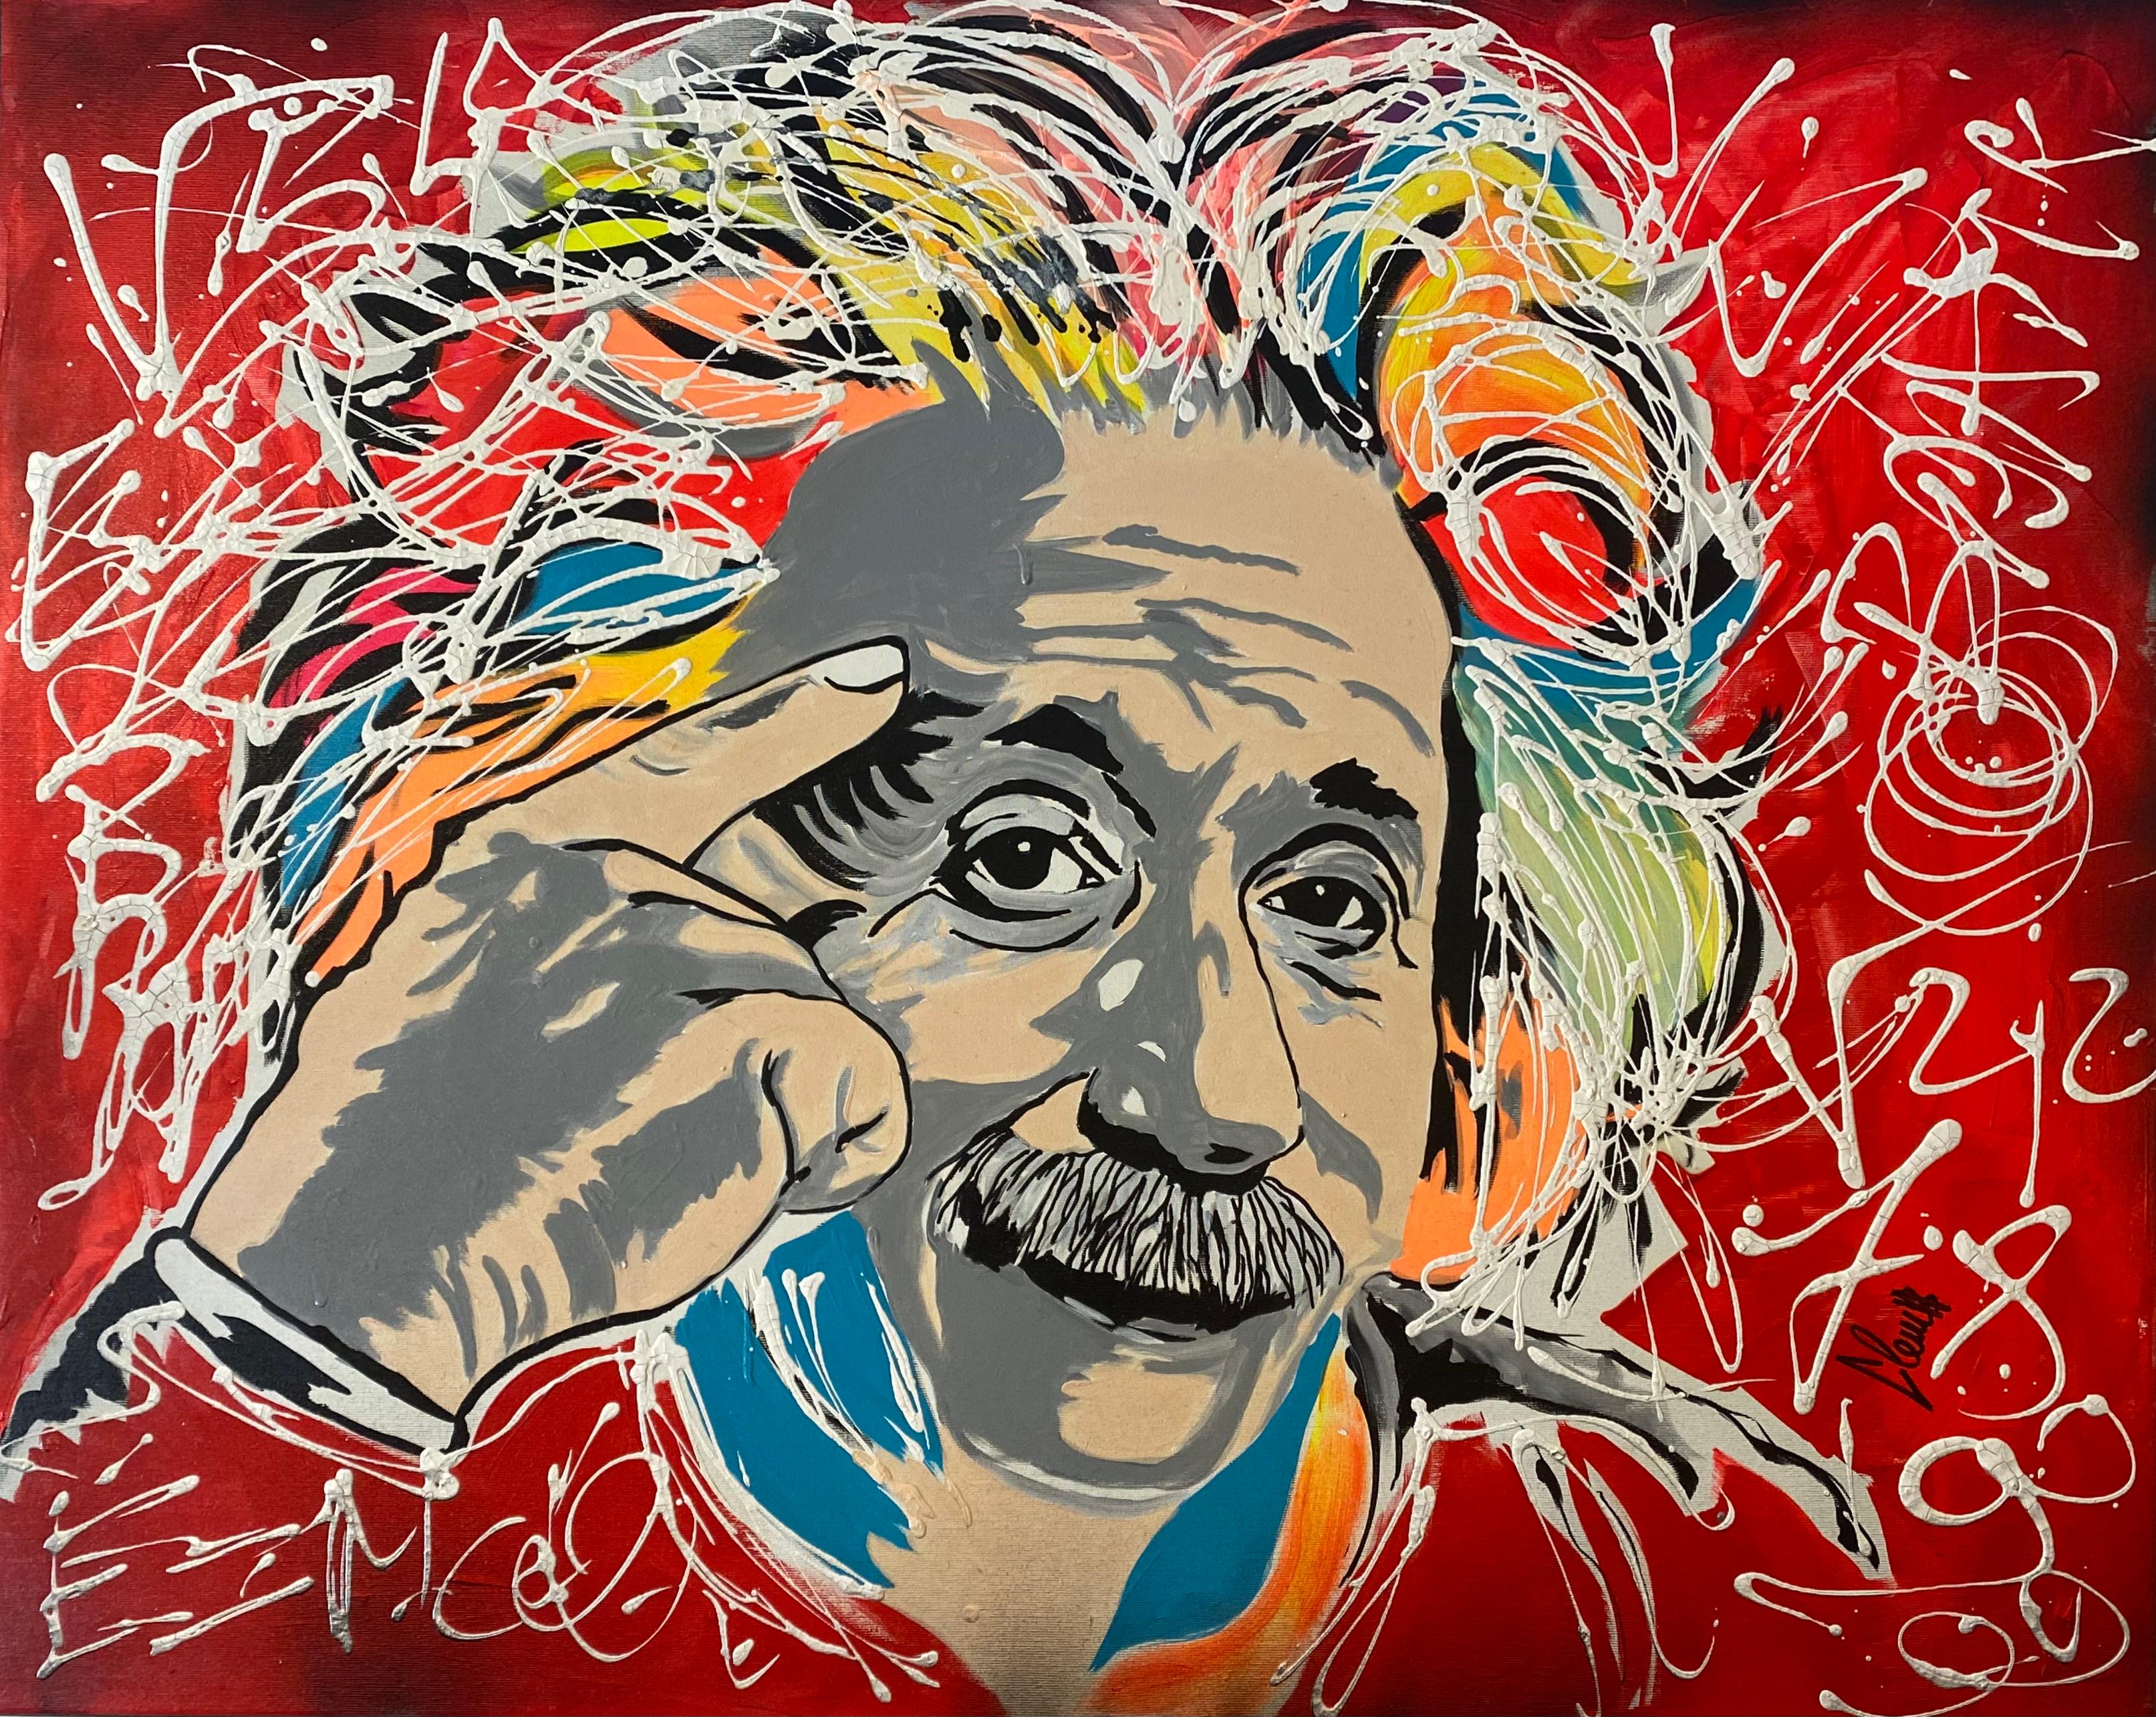 Peinture Clem$ - Einstein
Technique mixte sur toile
Pancarte
travail original
Dimensions : 100x80cm